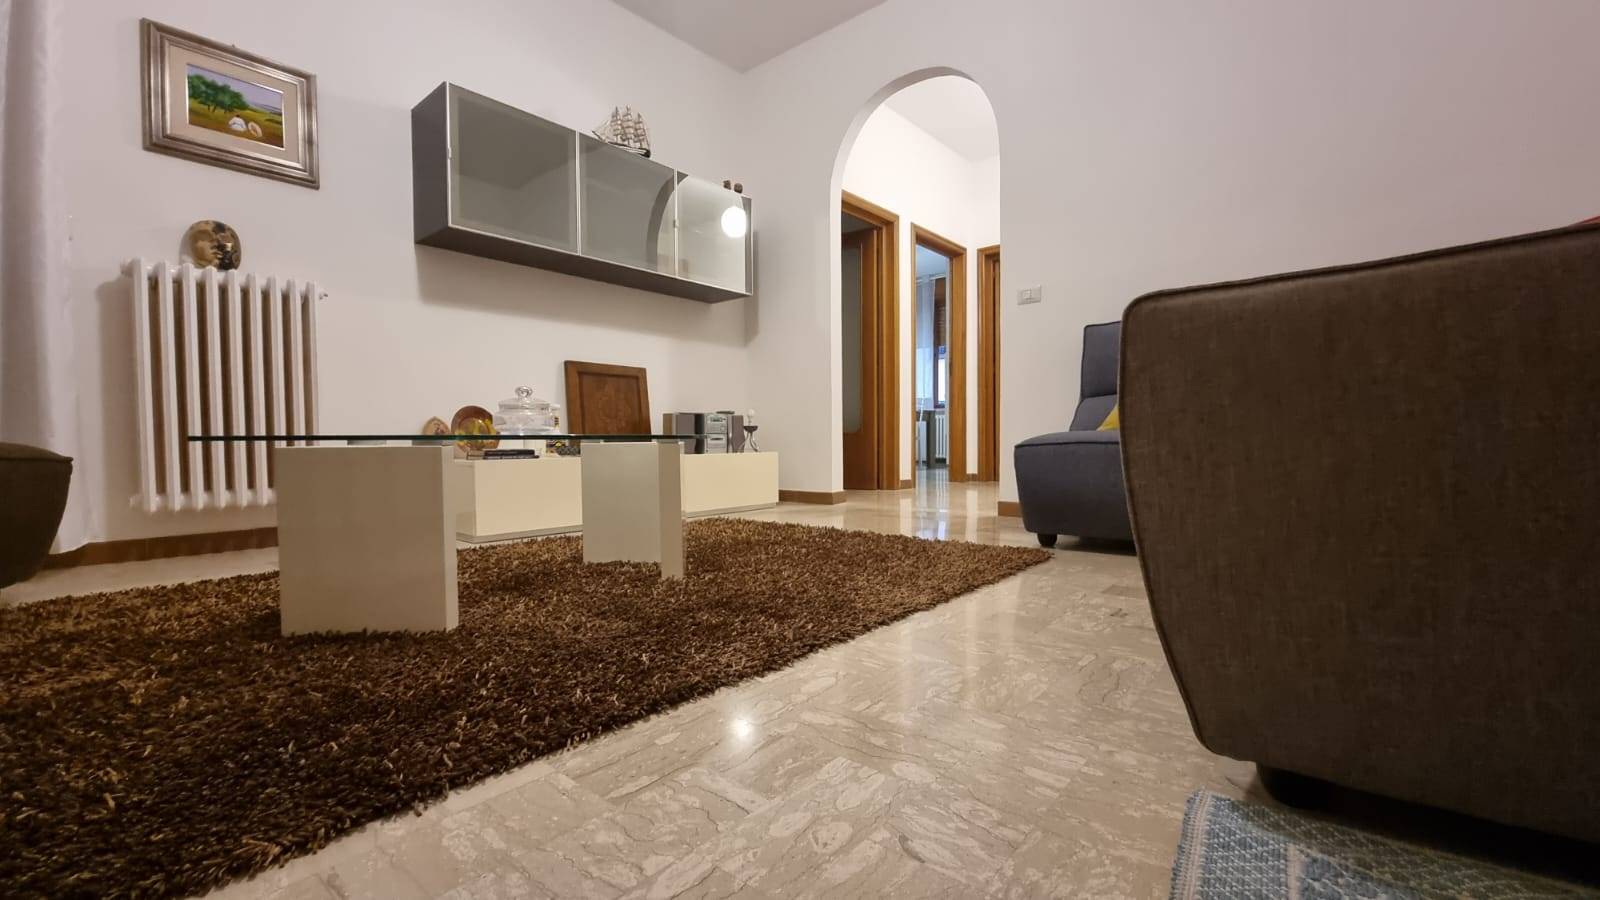 Appartamento in vendita a Altamura, 8 locali, zona Località: VIA GRAVINA, prezzo € 169.000 | PortaleAgenzieImmobiliari.it